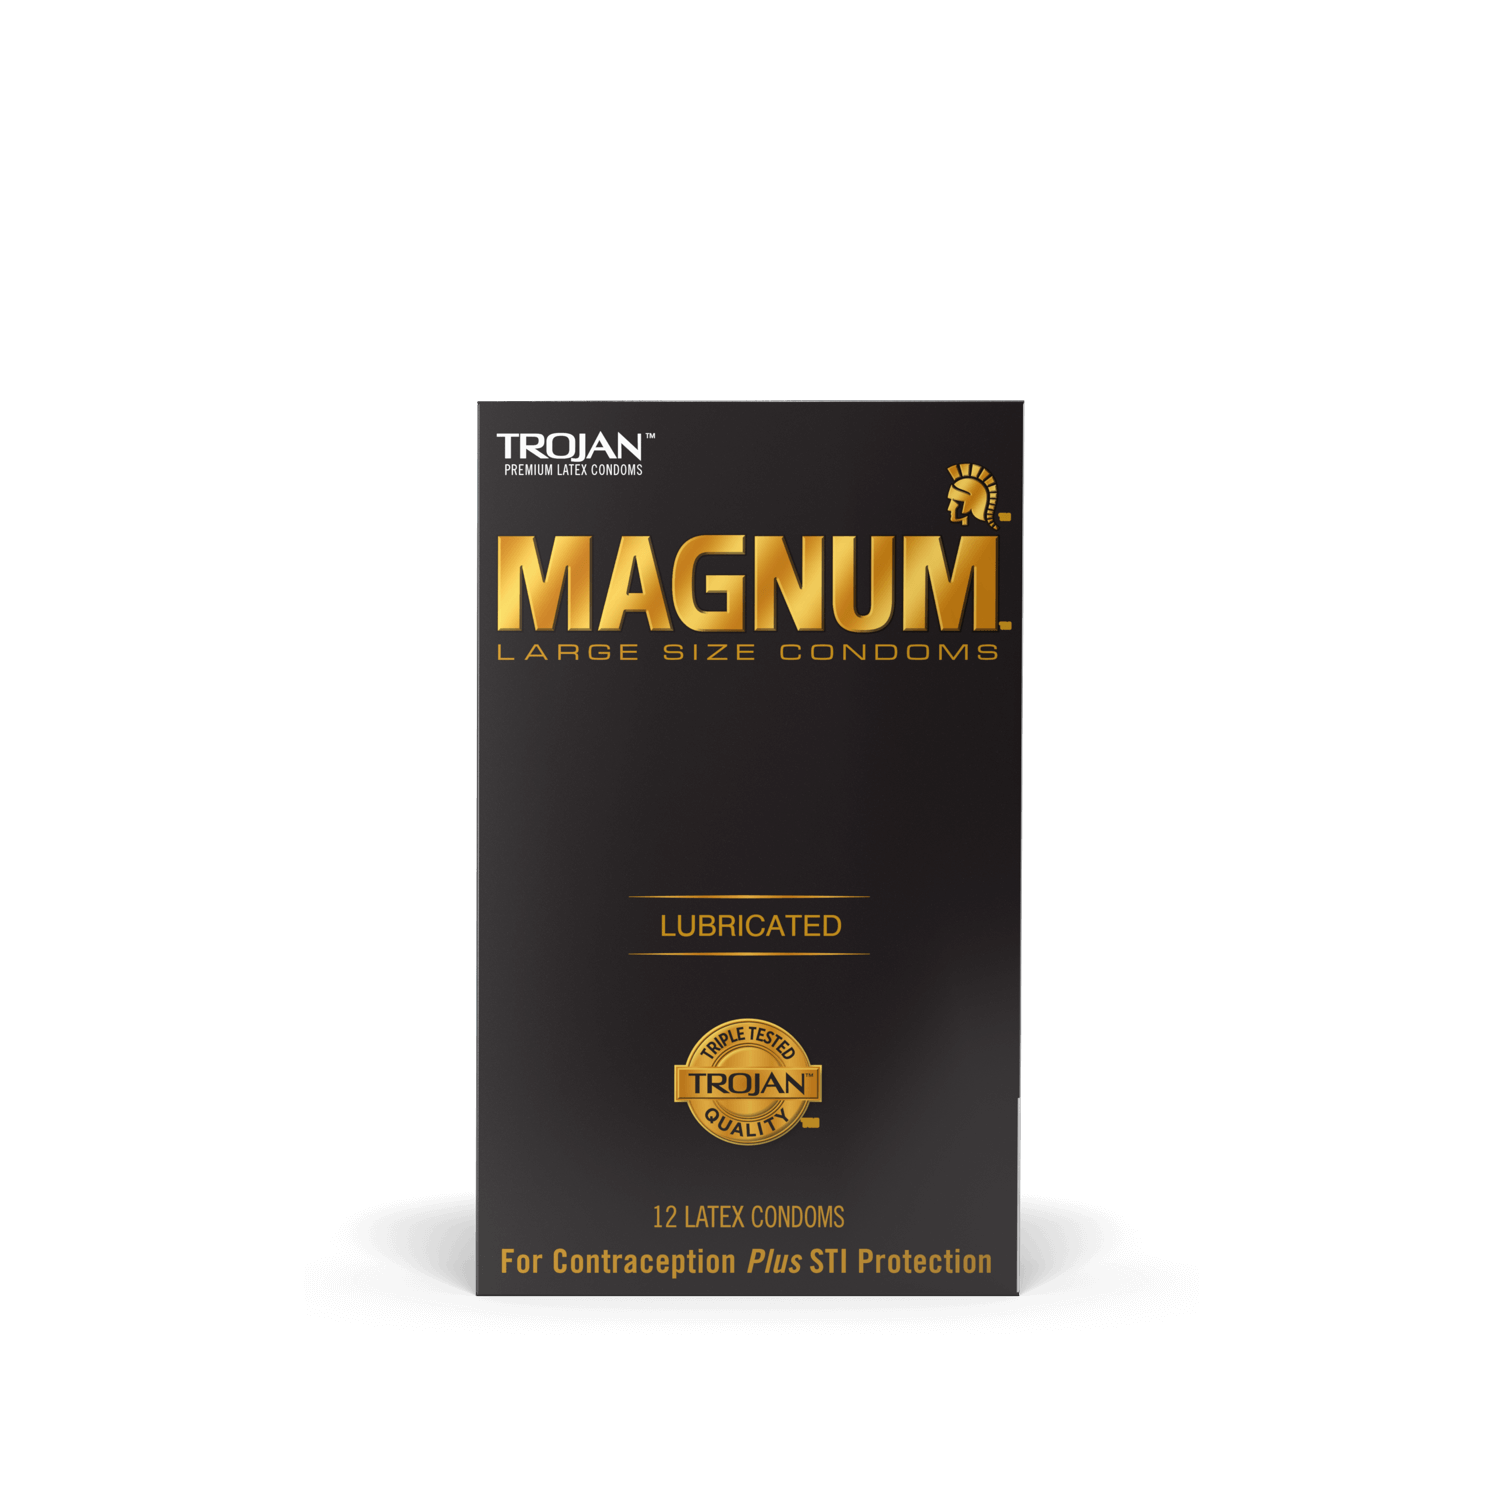 Trojan Magnum XL Latex Condom